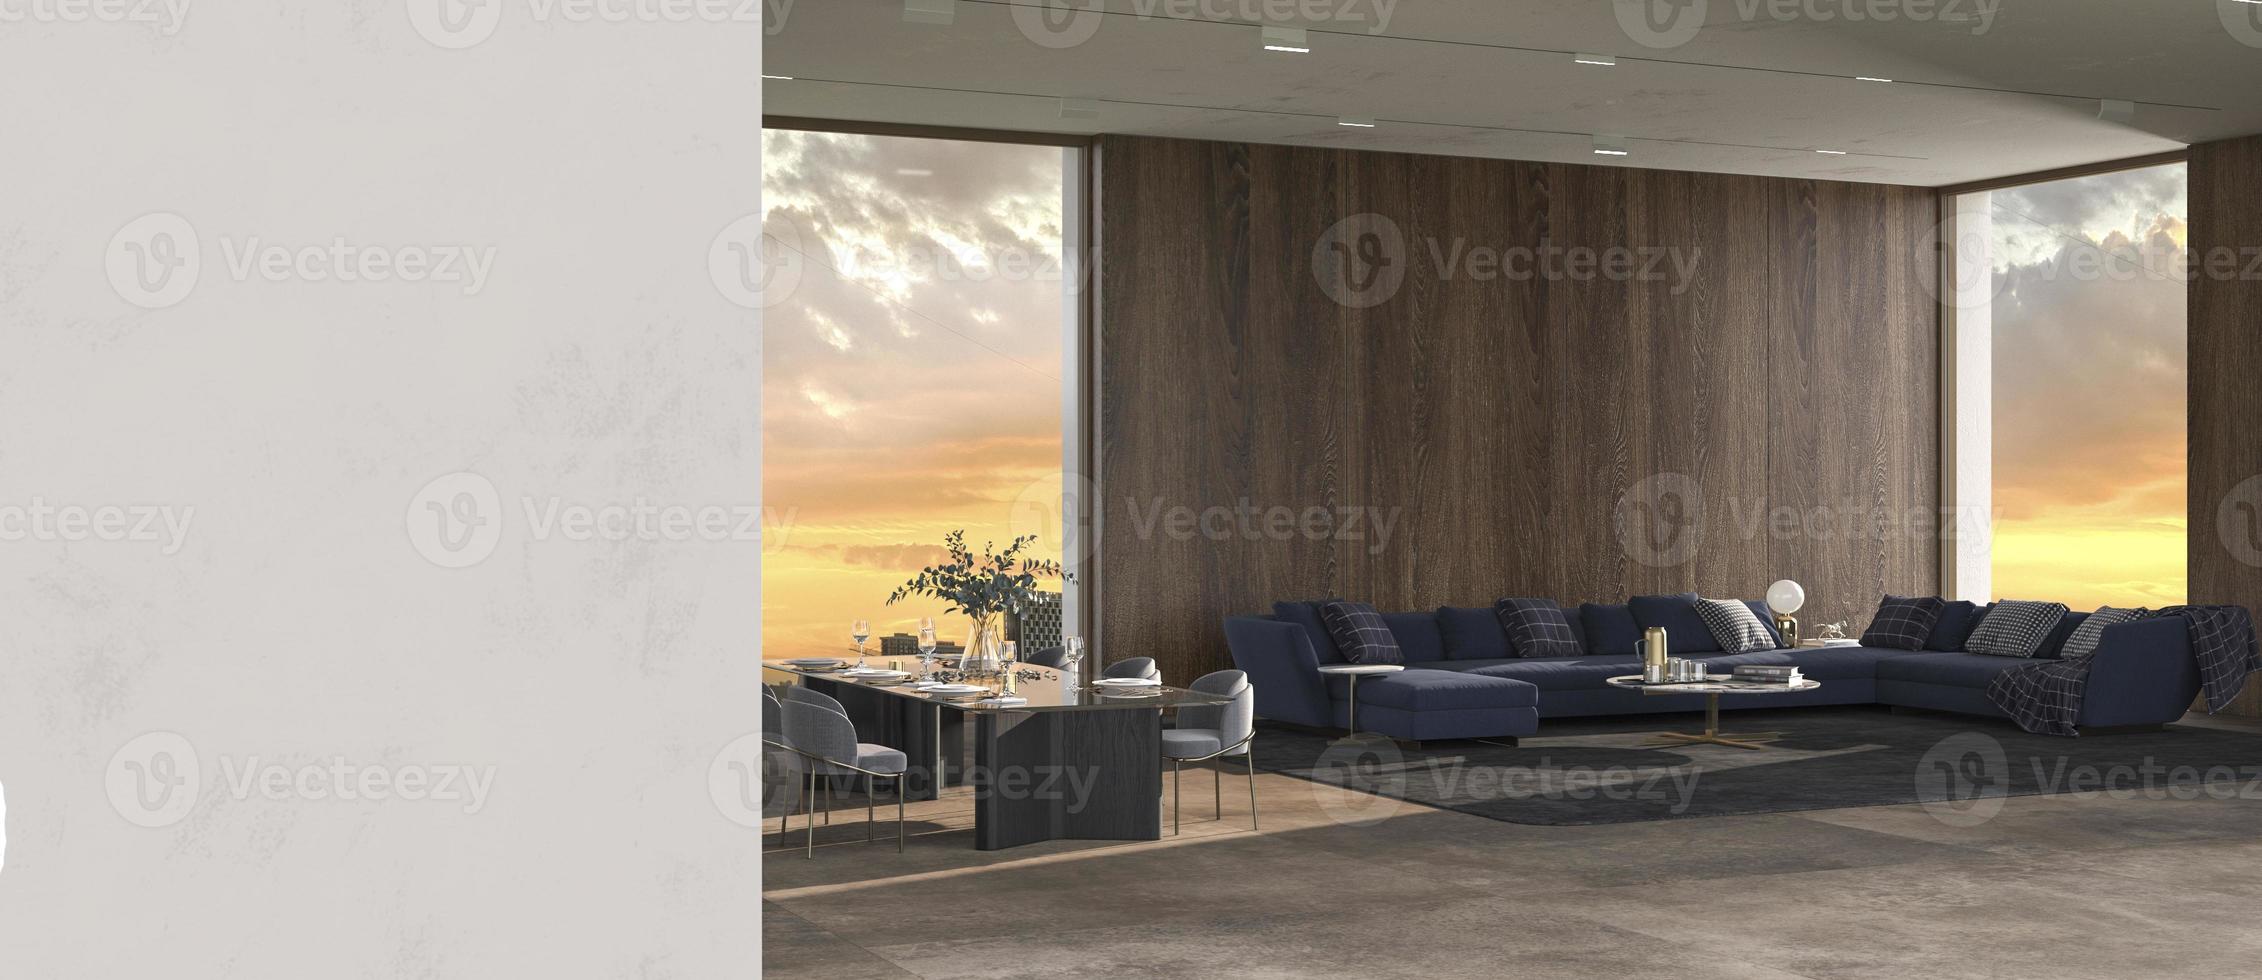 fond intérieur de luxe moderne avec fenêtres panoramiques et vue sur la nature et mur de plâtre maquette design lumineux salon illustration de rendu 3d photo